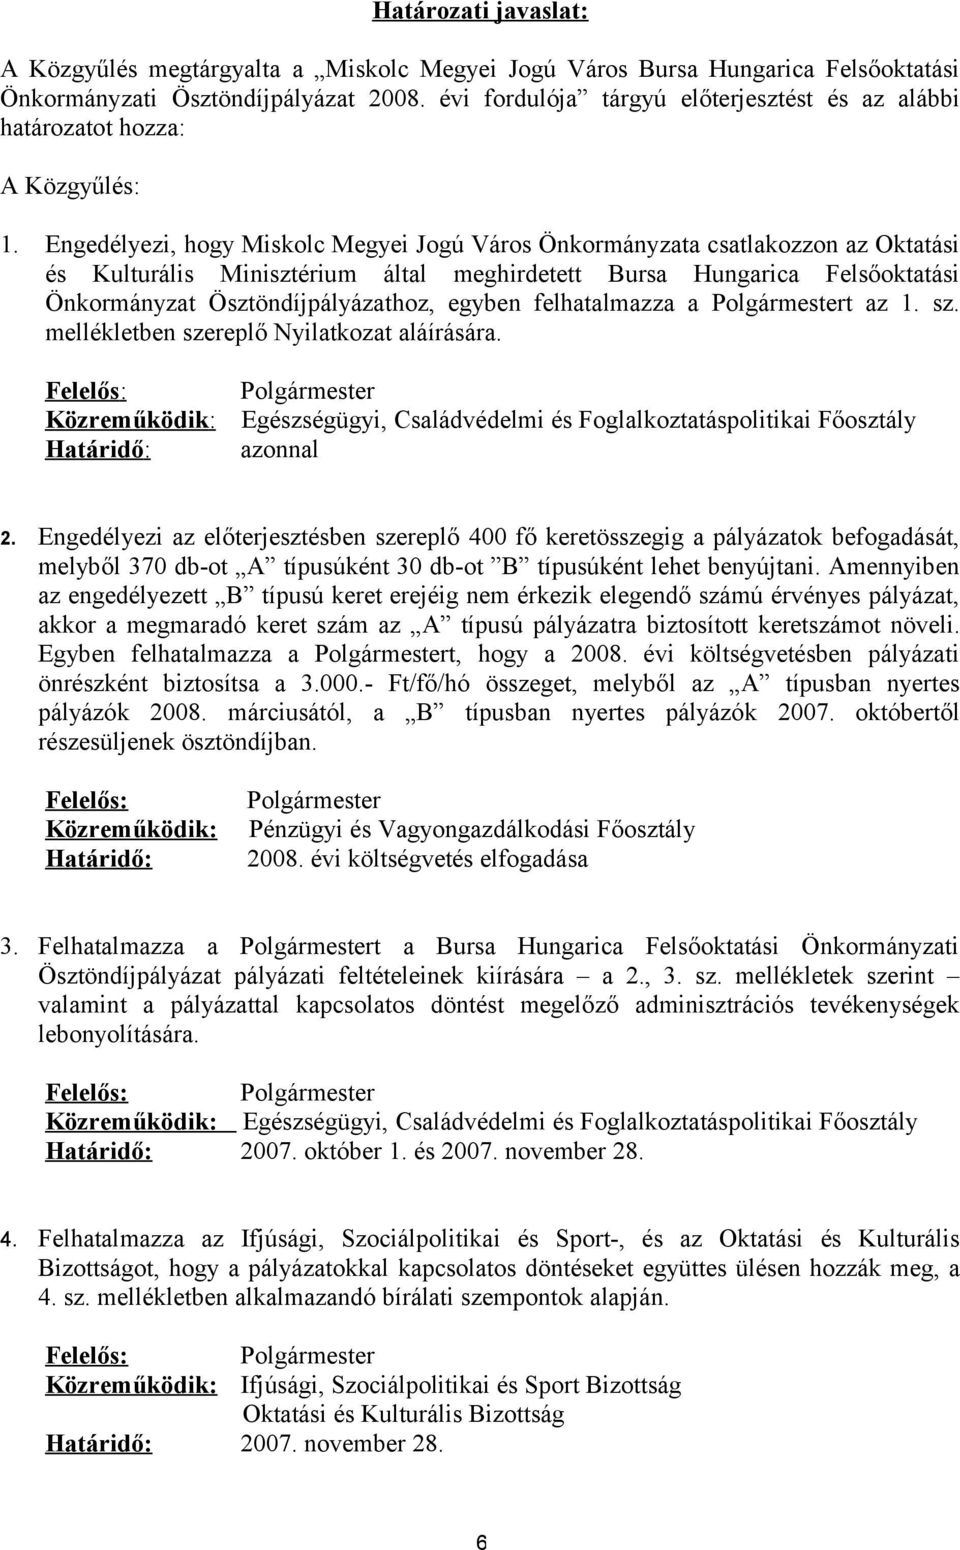 Engedélyezi, hogy Miskolc Megyei Jogú Város Önkormányzata csatlakozzon az Oktatási és Kulturális Minisztérium által meghirdetett Bursa Hungarica Felsőoktatási Önkormányzat Ösztöndíjpályázathoz,